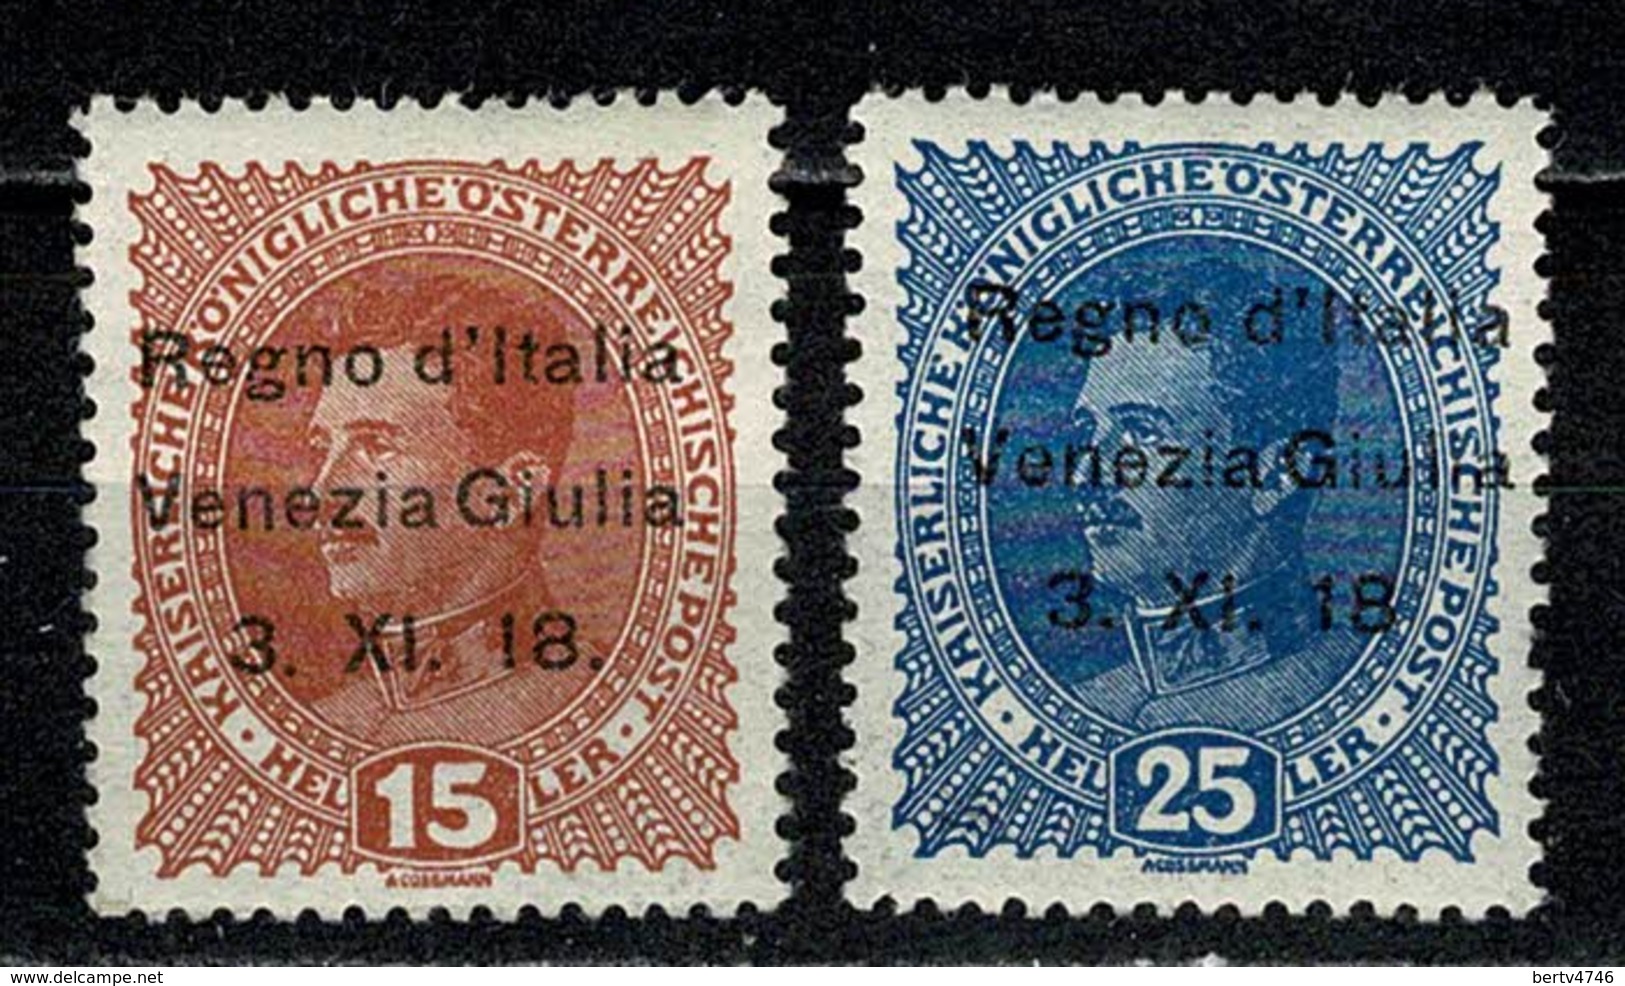 Venezia Giulia 1919 Yv 6*, 8* MH  Cat. Yv € 9,75 ( 2 Scans ) - Vénétie Julienne